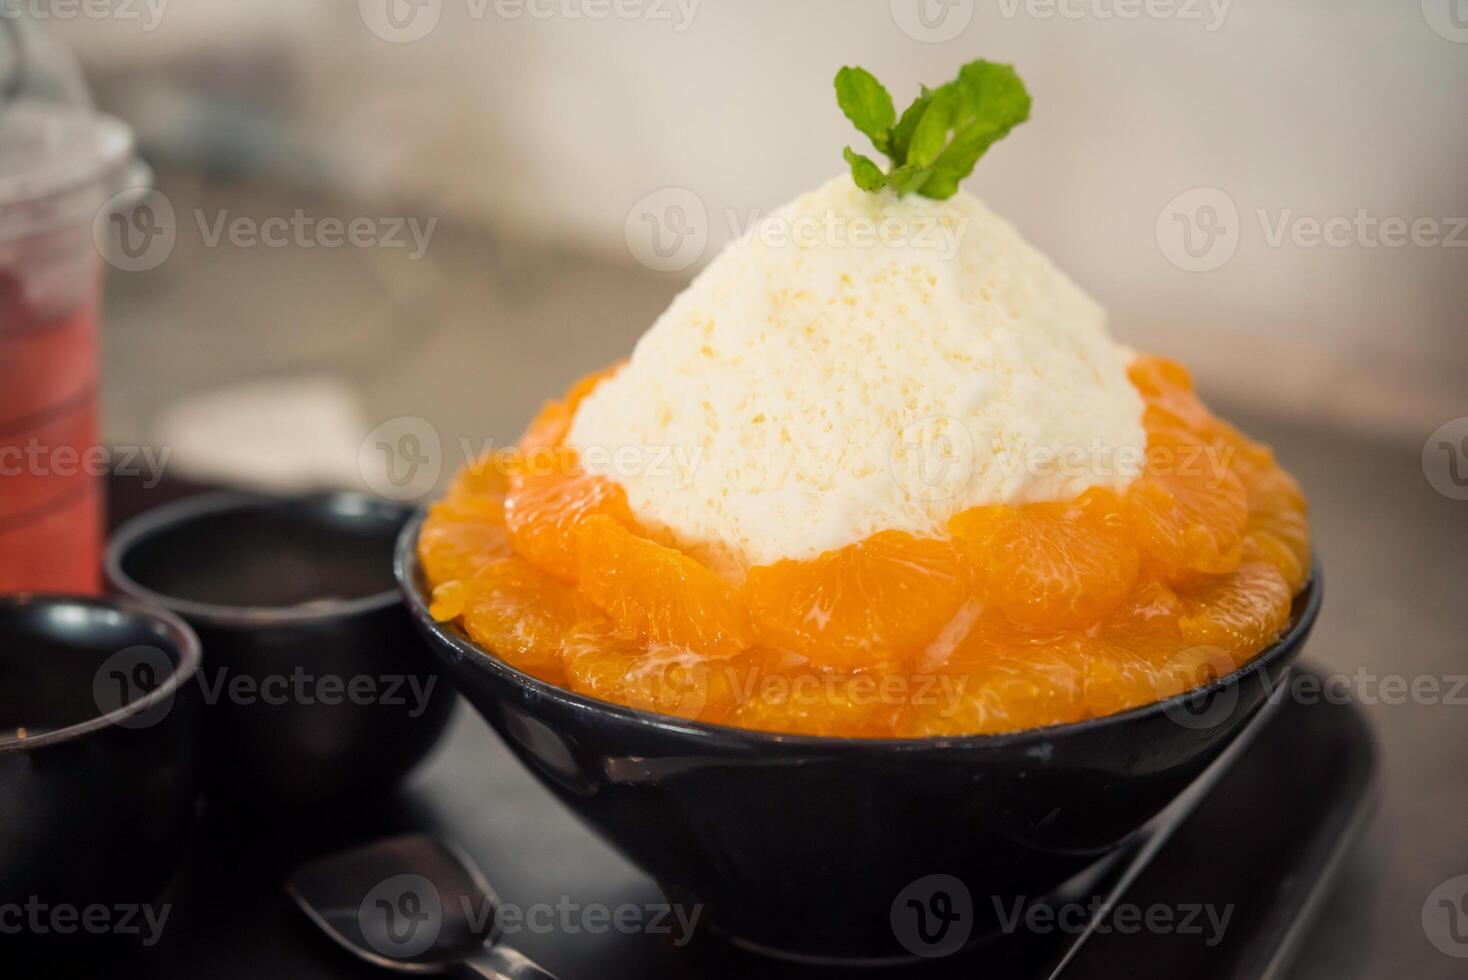 detailopname oranje bingsu bekroond met kaas en yoghurt ijsje bingsoo is een Koreaans geschoren ijs toetje met zoet geslagen room en gezoet gecondenseerd melk. zijn heel populair nagerecht. foto